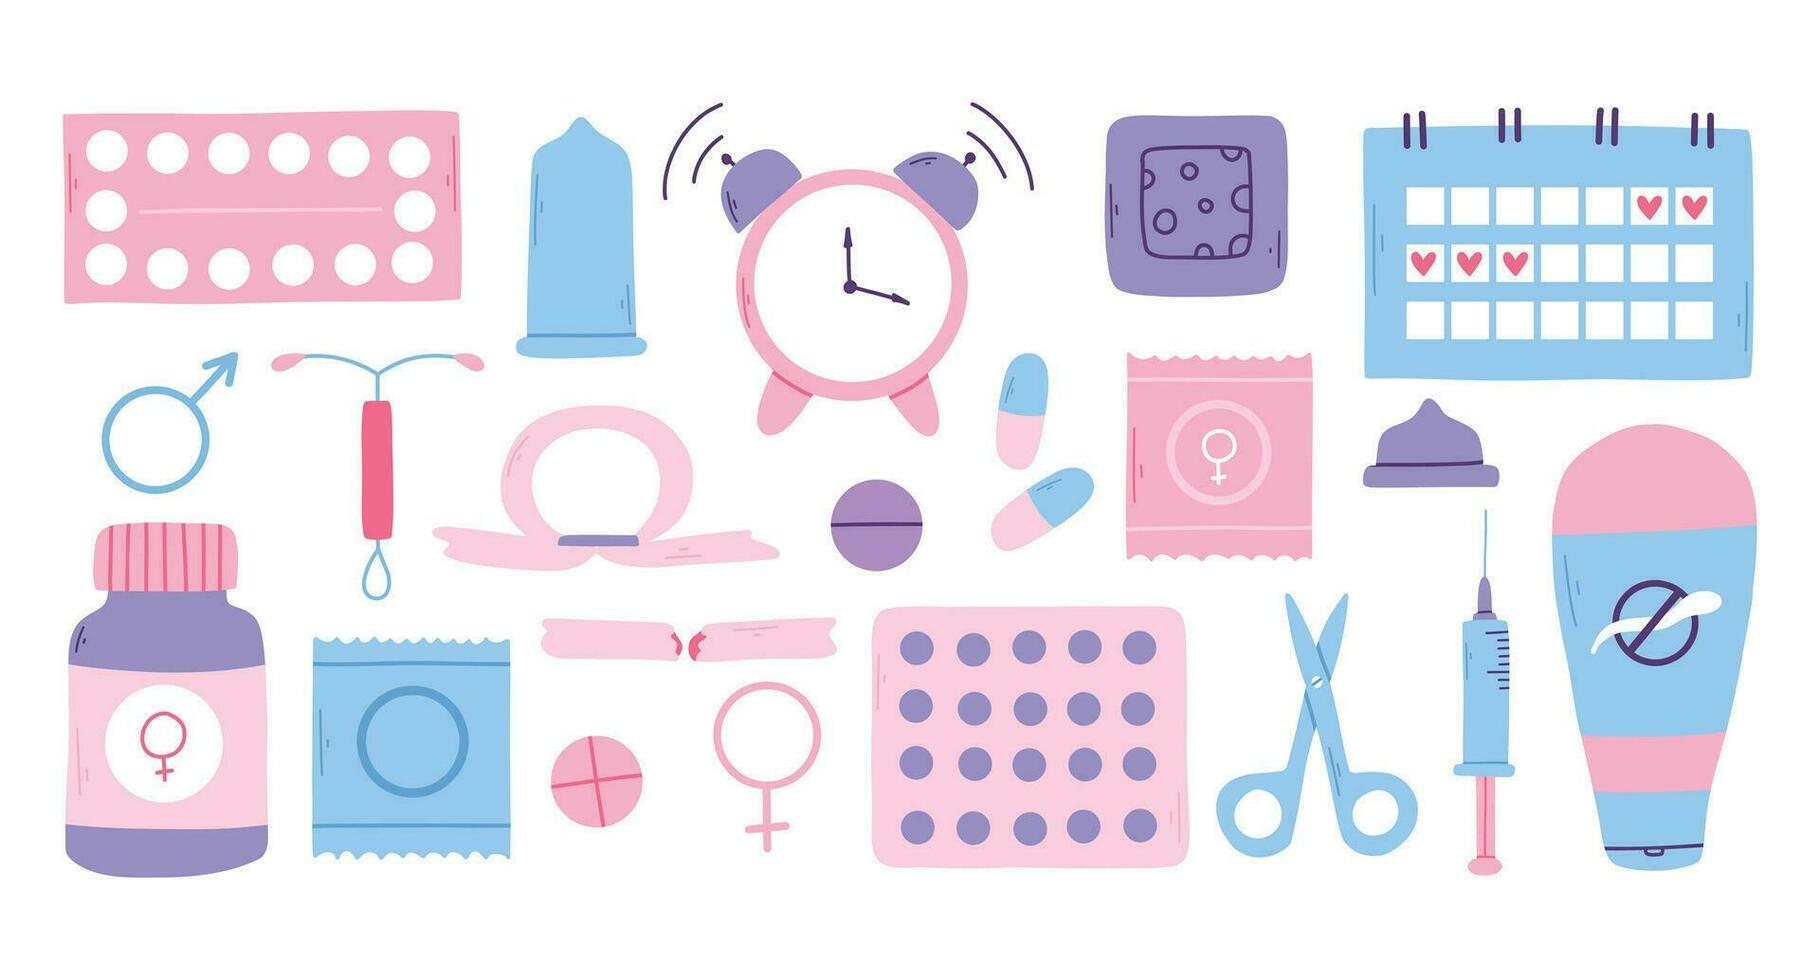 typer av preventivmedel. biljard, kalender, lappa, kondom och spole. vektor illustration i en platt stil. affisch med preventivmedel. värld preventivmedel dag.